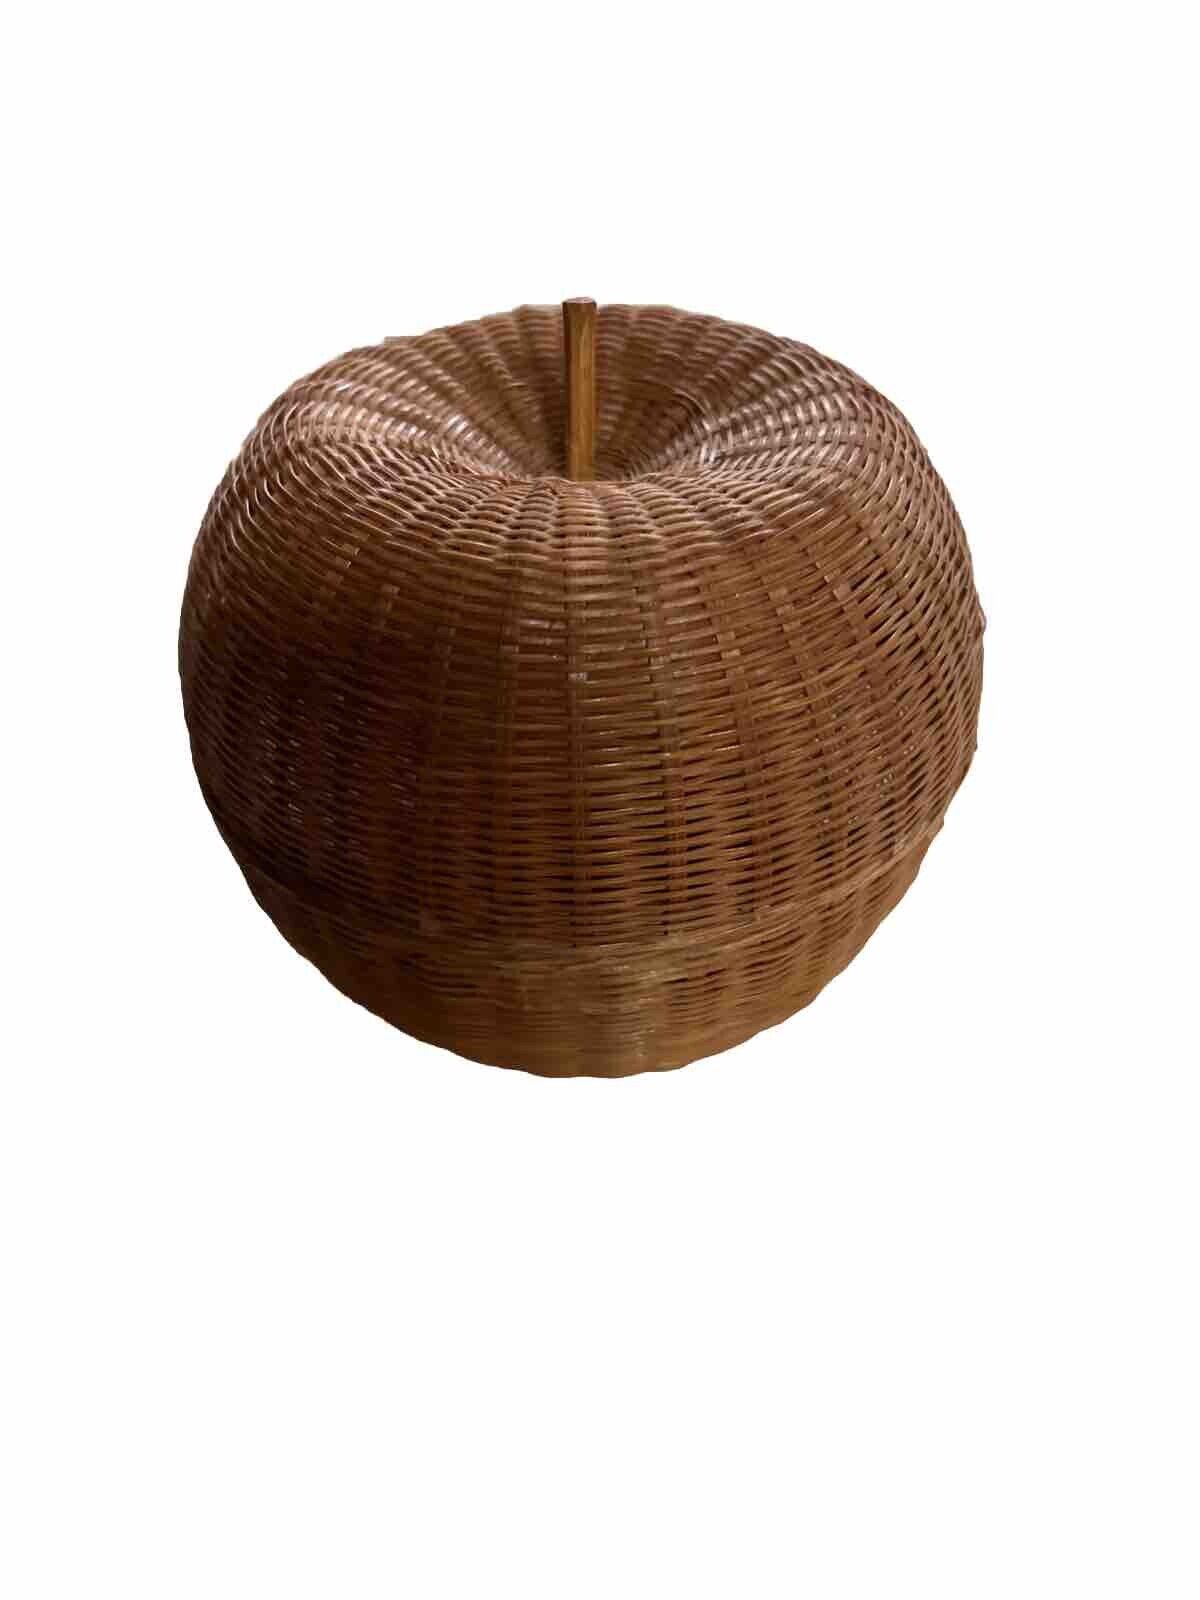 Vintage Apple Shaped Wicker Basket Small Woven Teacher Shelf Decor 4\